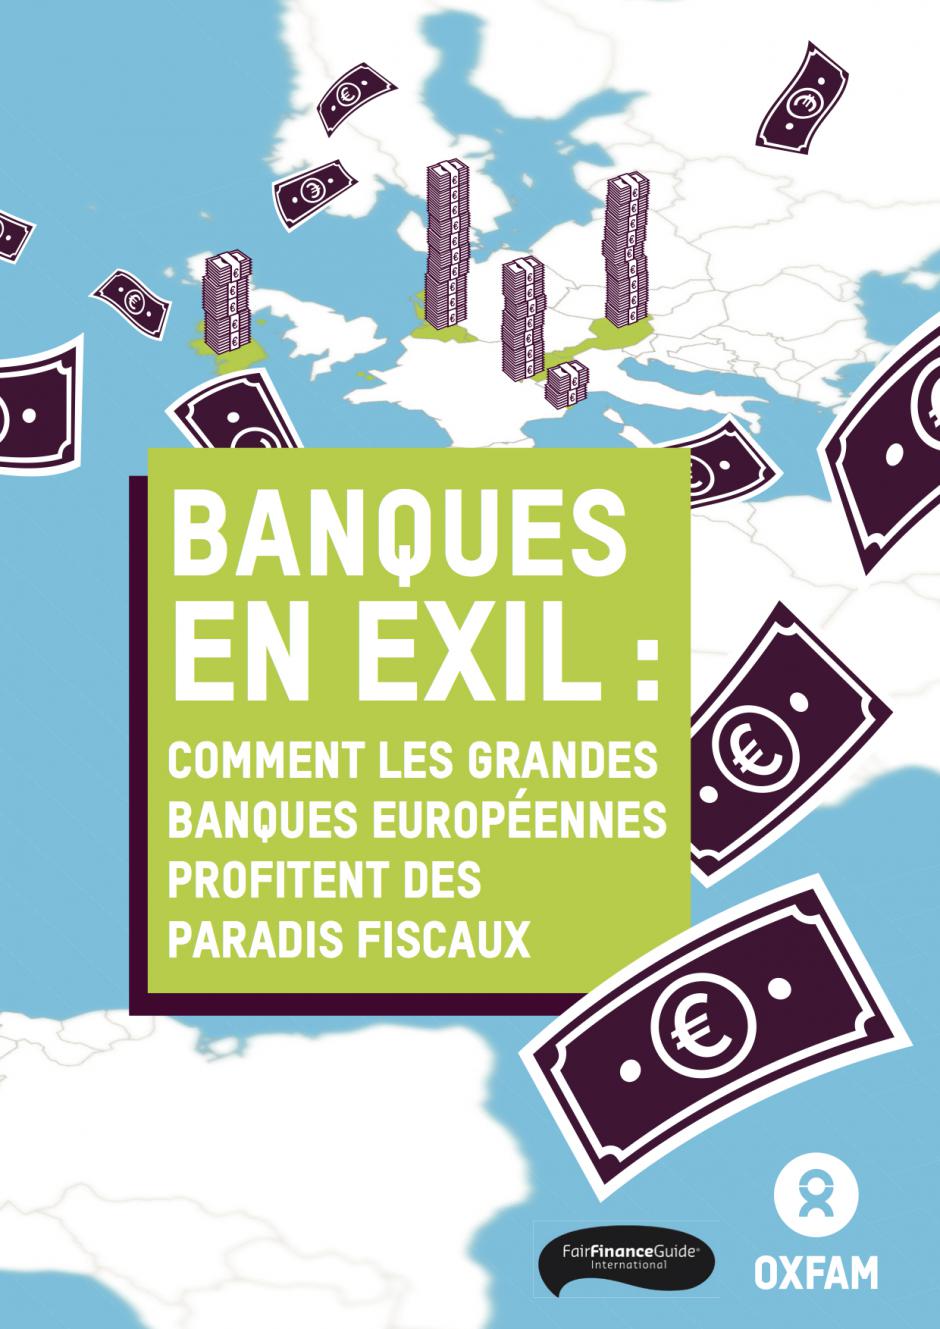 Rapport « Banques en exil : comment les grandes banques européennes profitent des paradis fiscaux » - Oxfam, 25 mars 2017